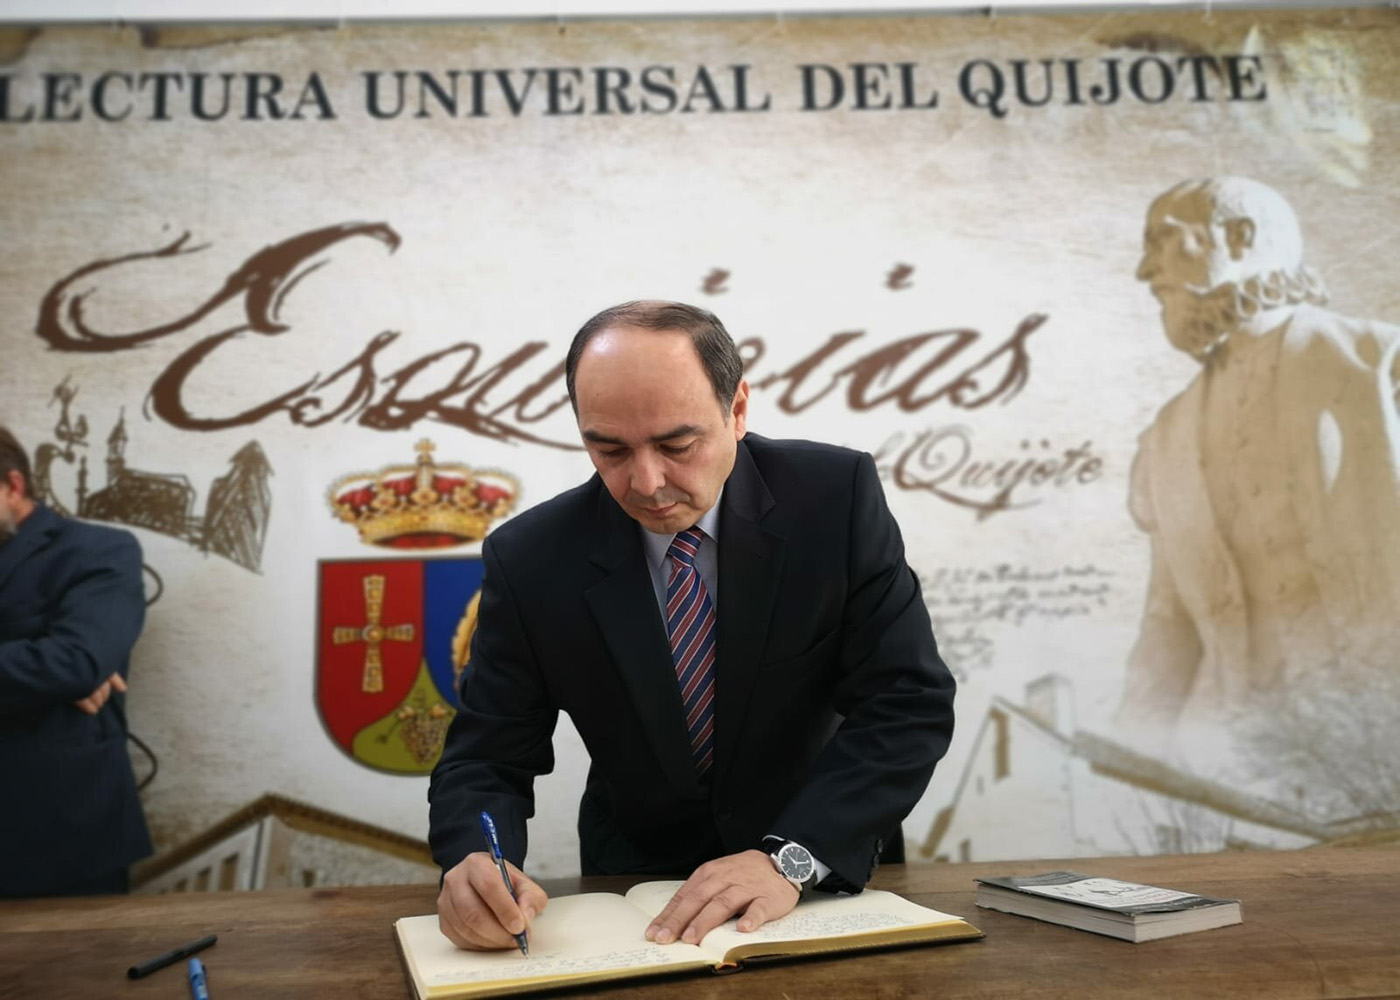 El idioma guaraní estuvo presente en la lectura universal del Quijote